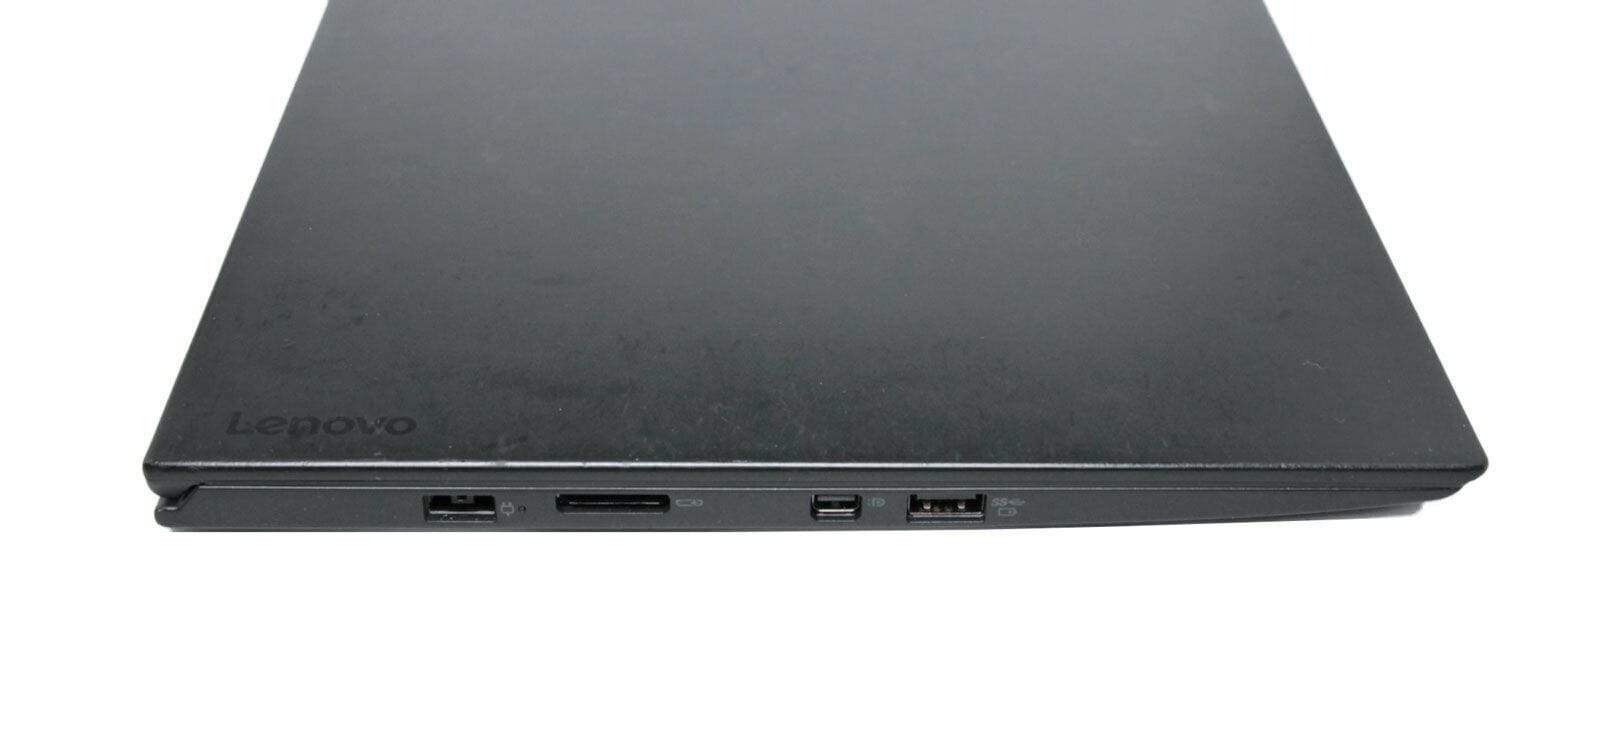 Lenovo Thinkpad X1 Carbon WQHD: Core i7-6600U, 8GB, Cellular, Warranty, 1.2Kg - CruiseTech